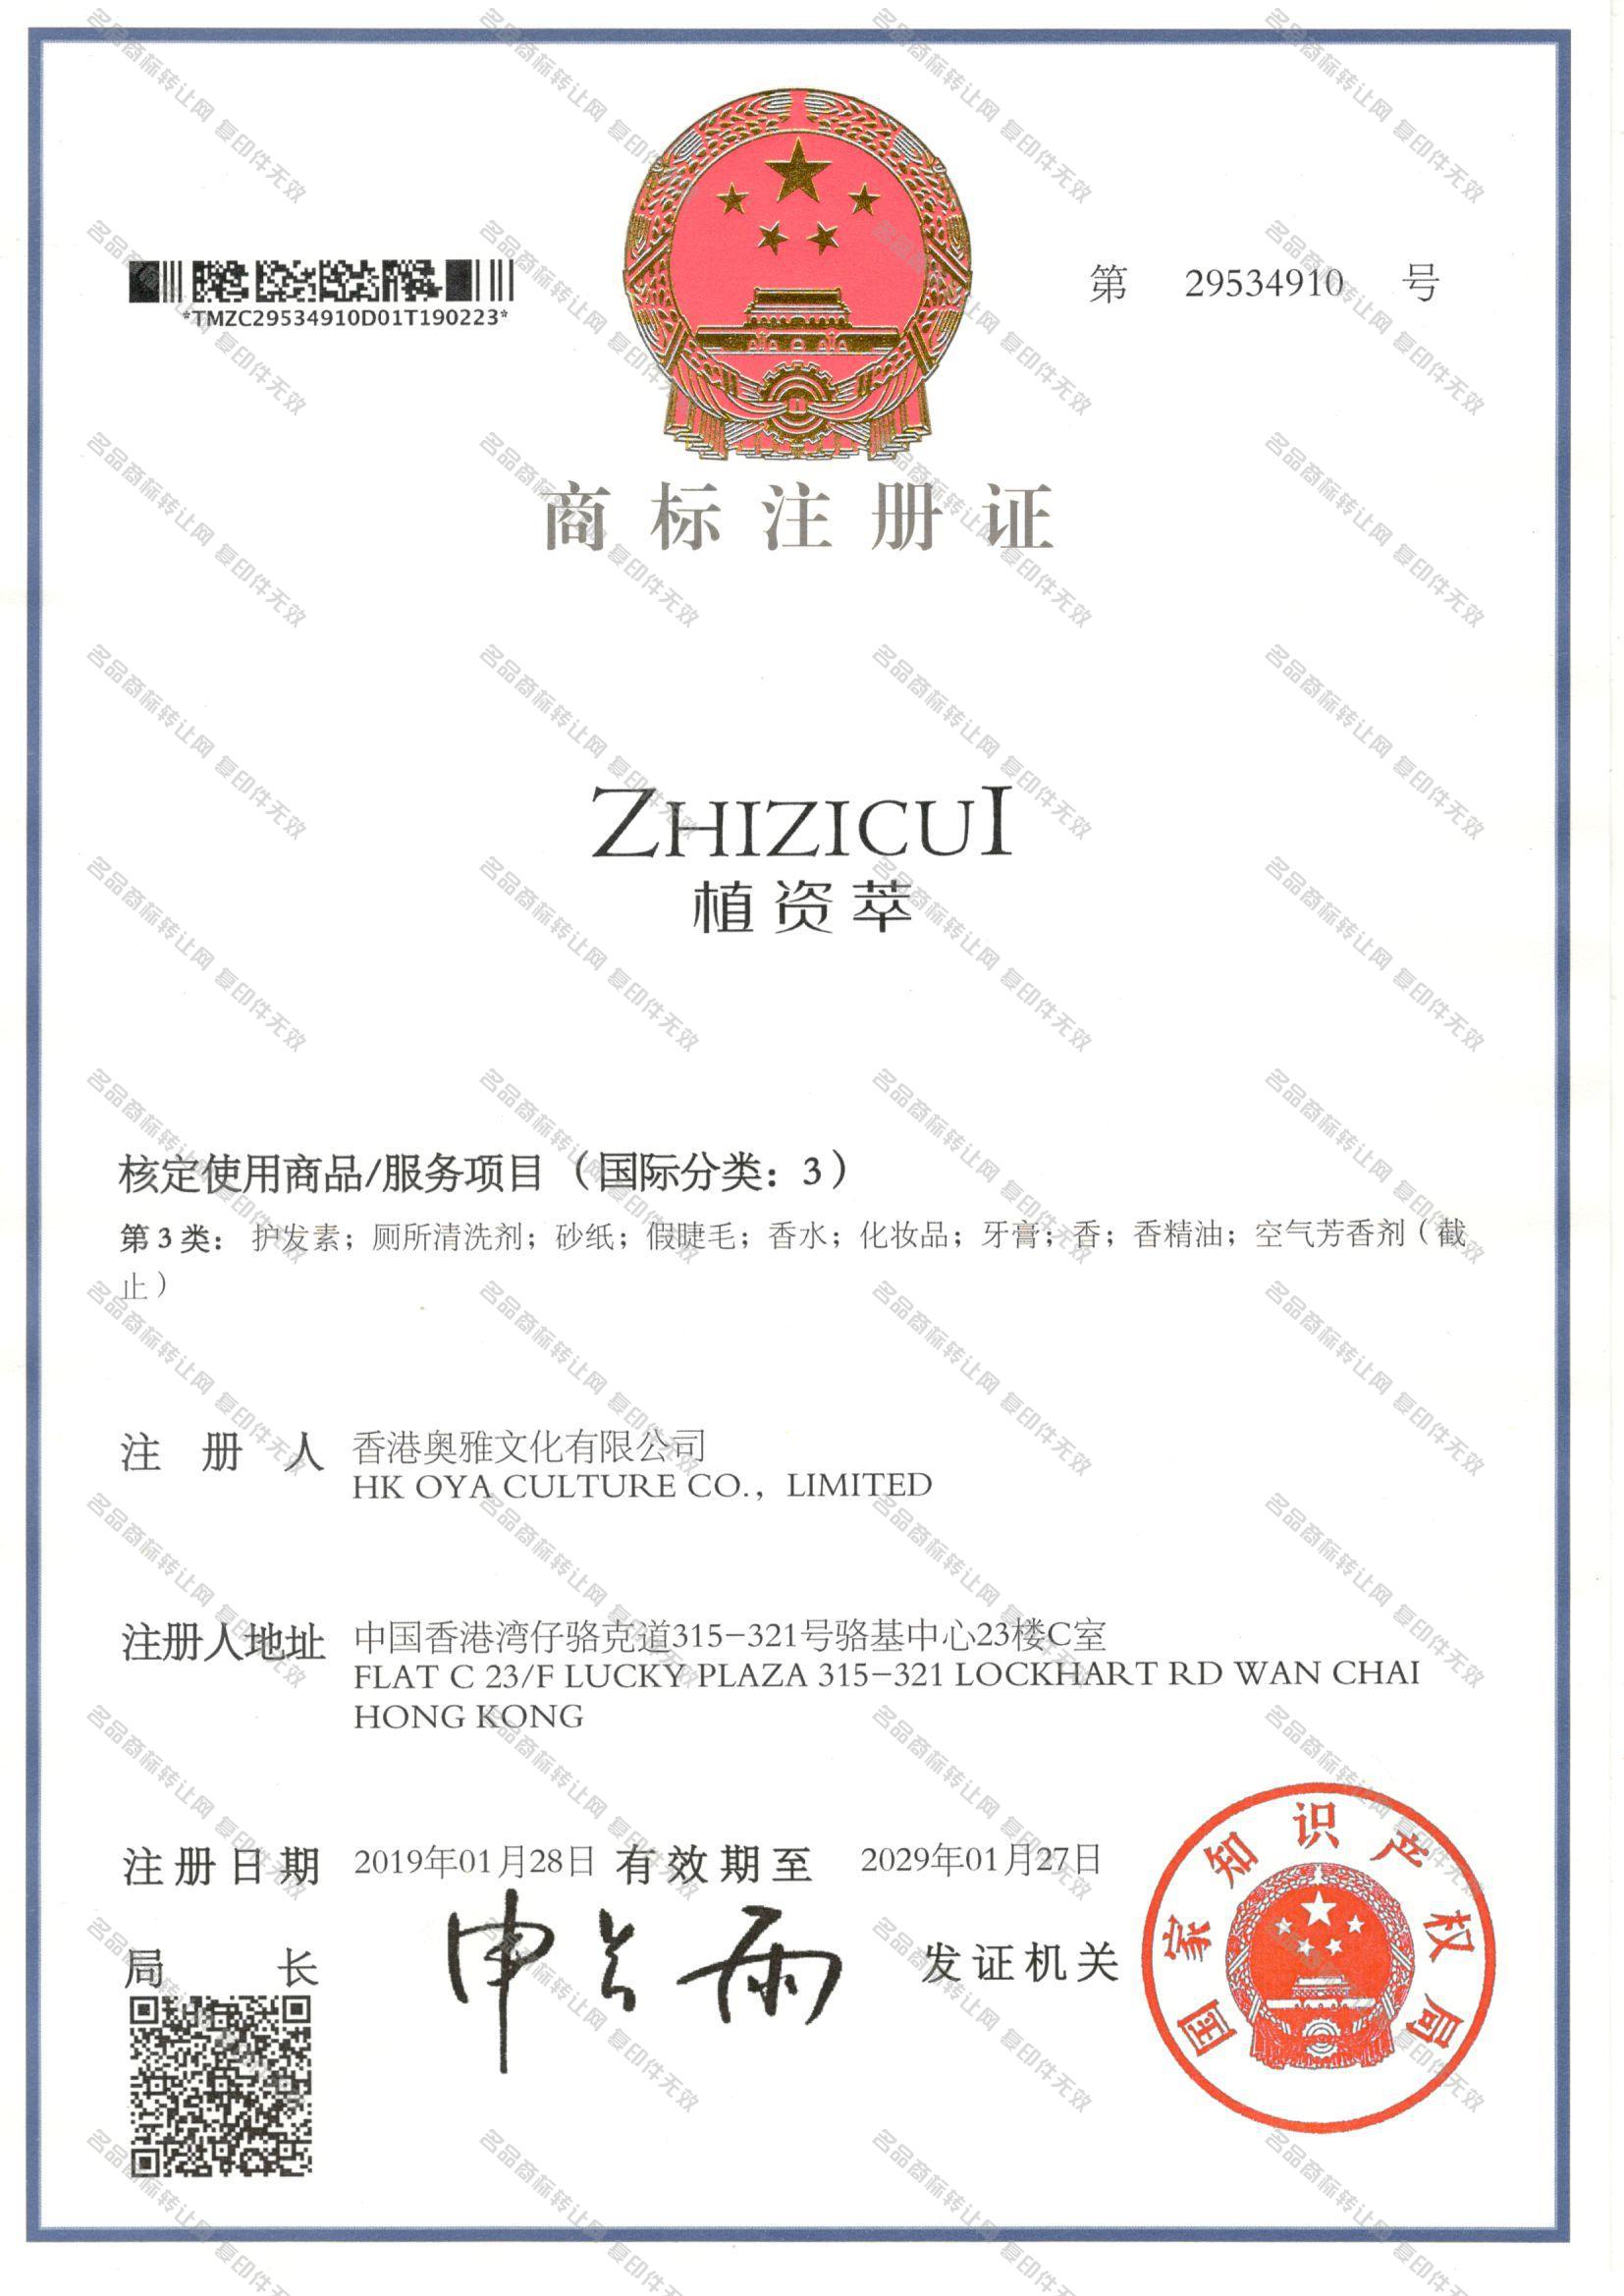 植资萃 ZHIZICUI注册证